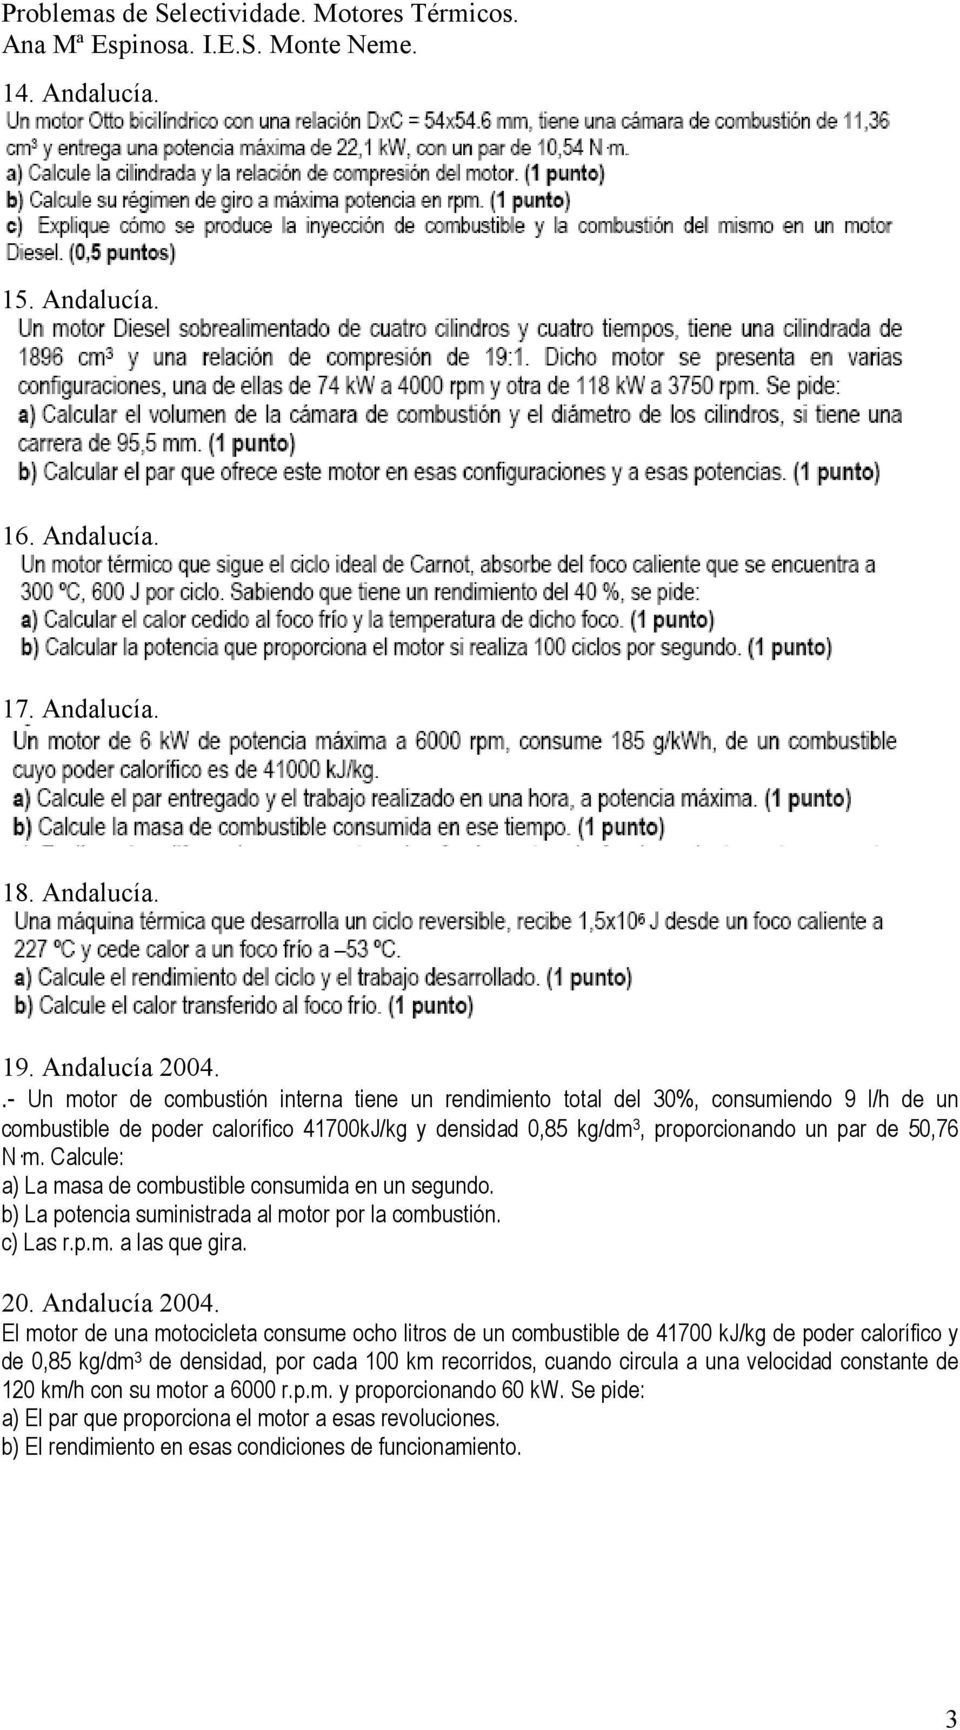 Calcule: a) La masa de combustible consumida en un segundo. b) La potencia suministrada al motor por la combustión. c) Las r.p.m. a las que gira. 20. Andalucía 2004.